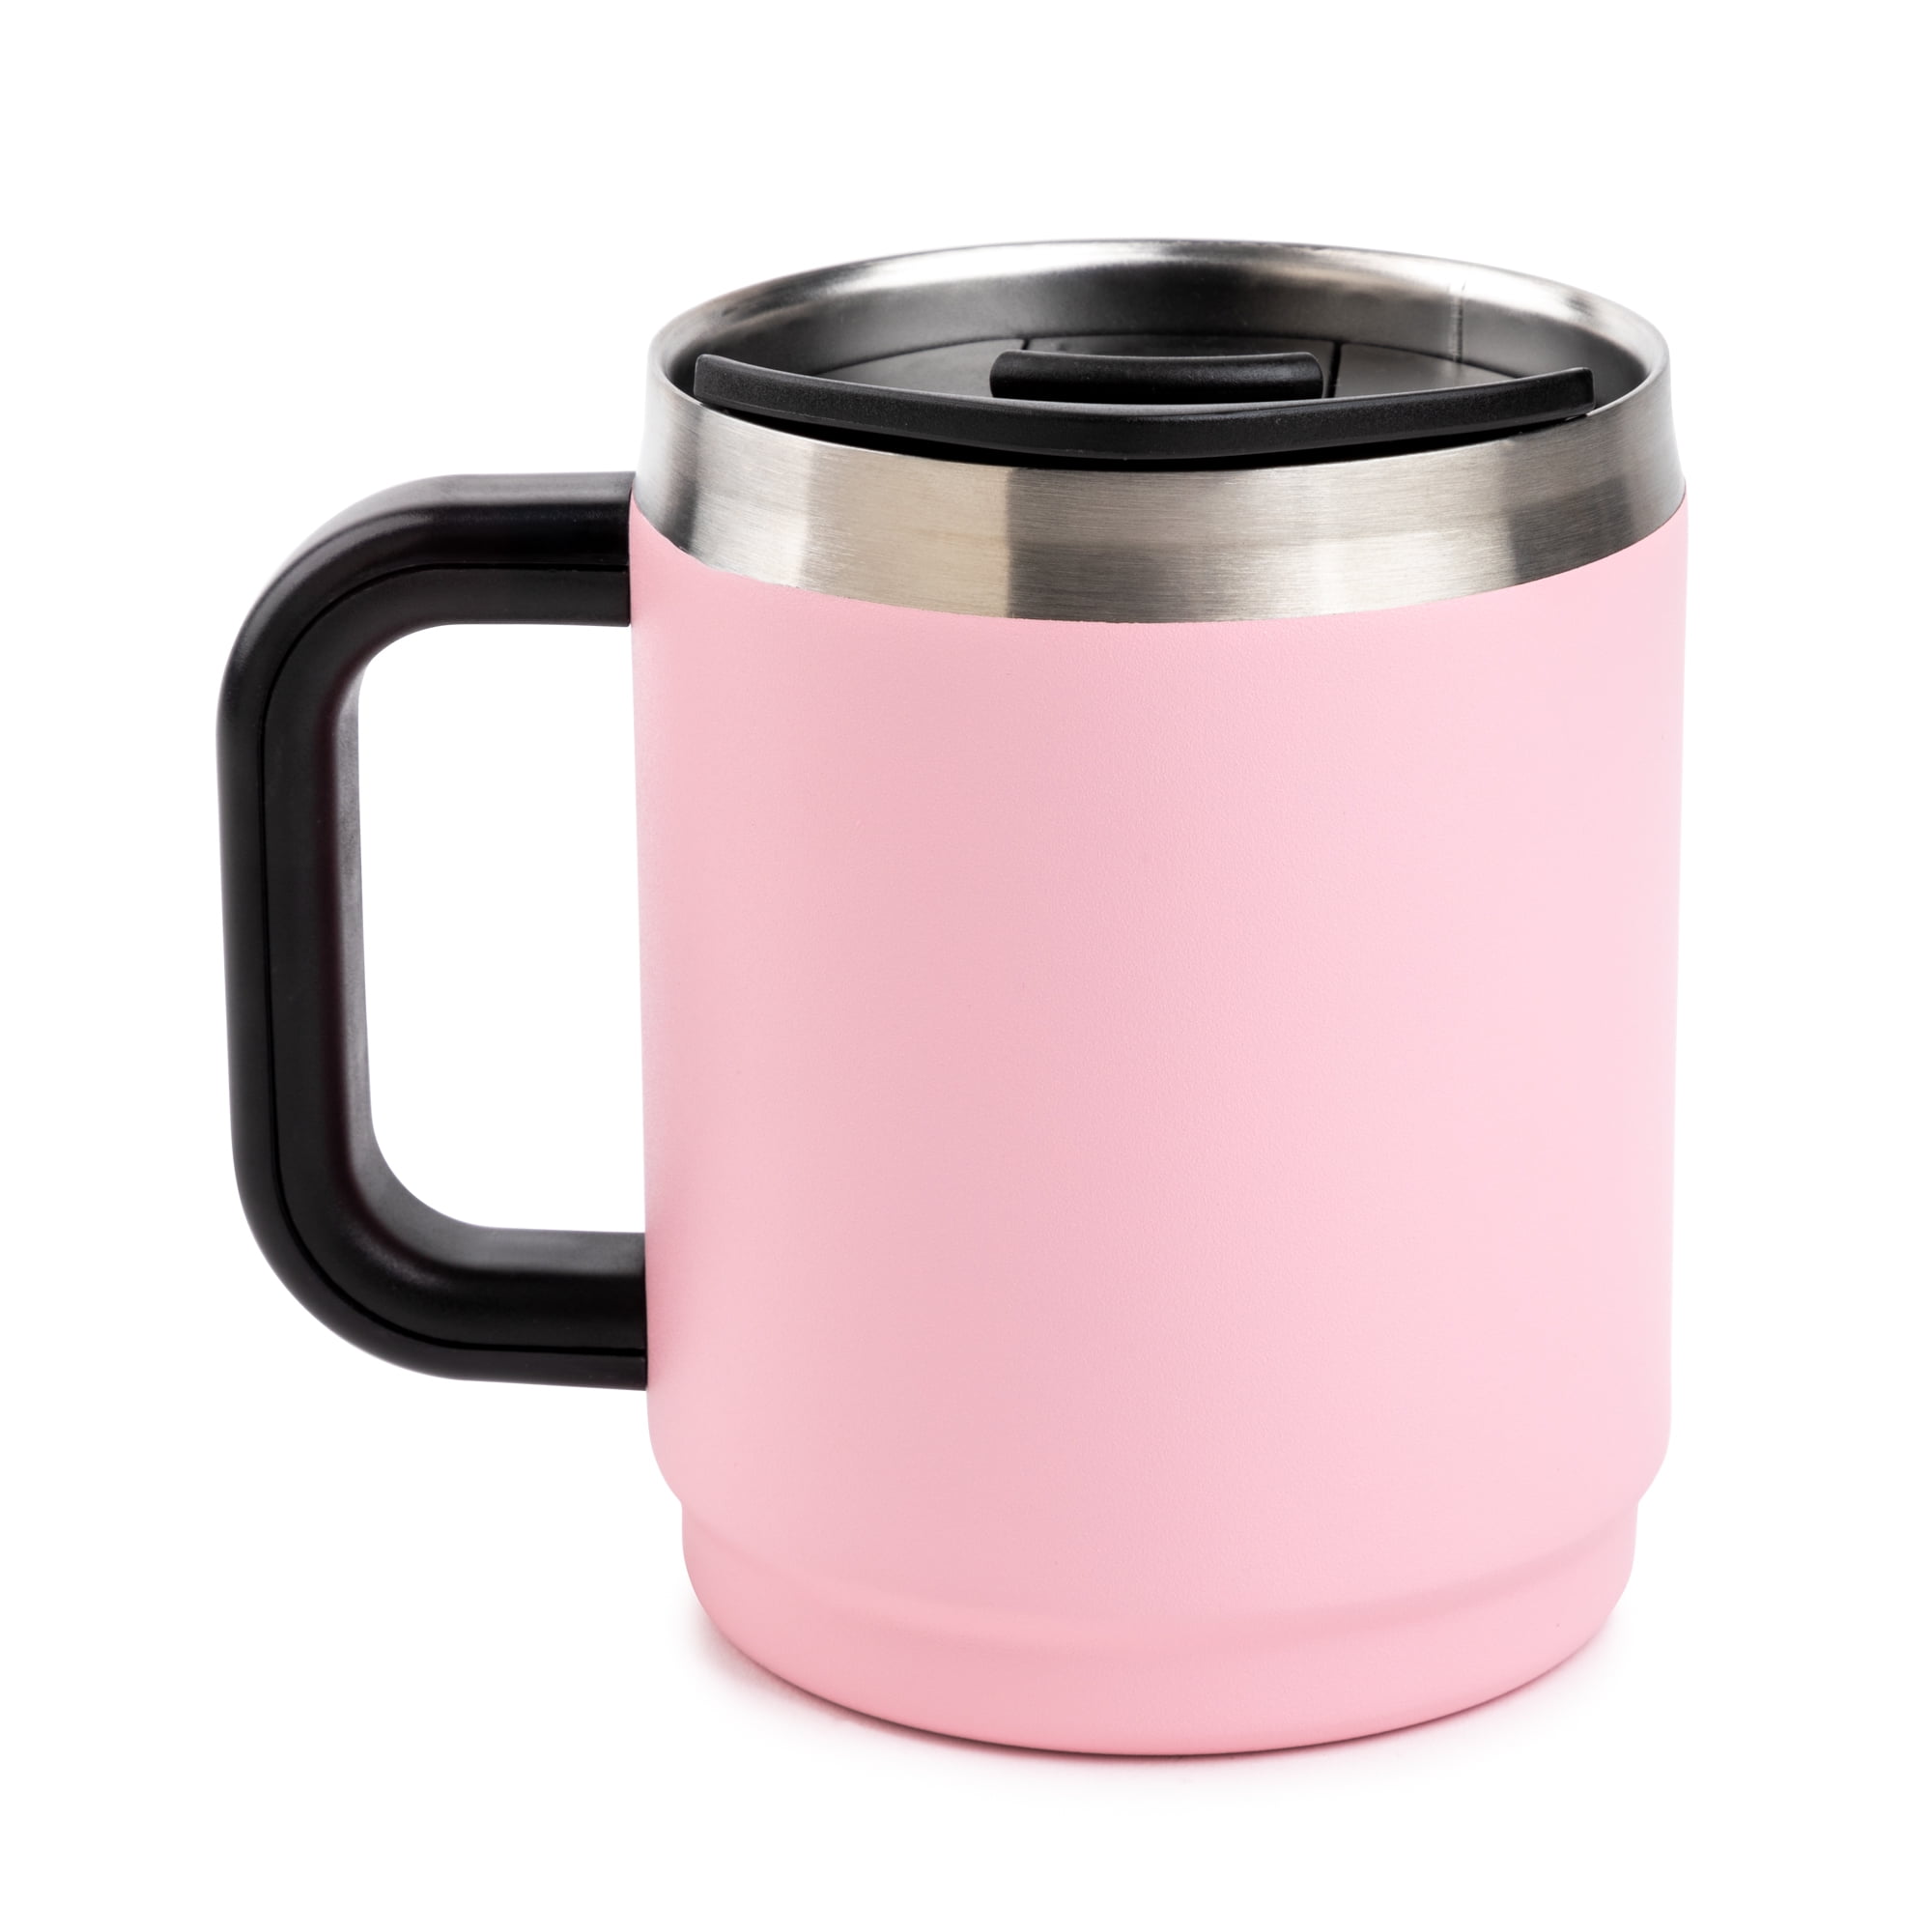 TAL Stainless Steel Boulder Mug 14 fl oz, Pink 